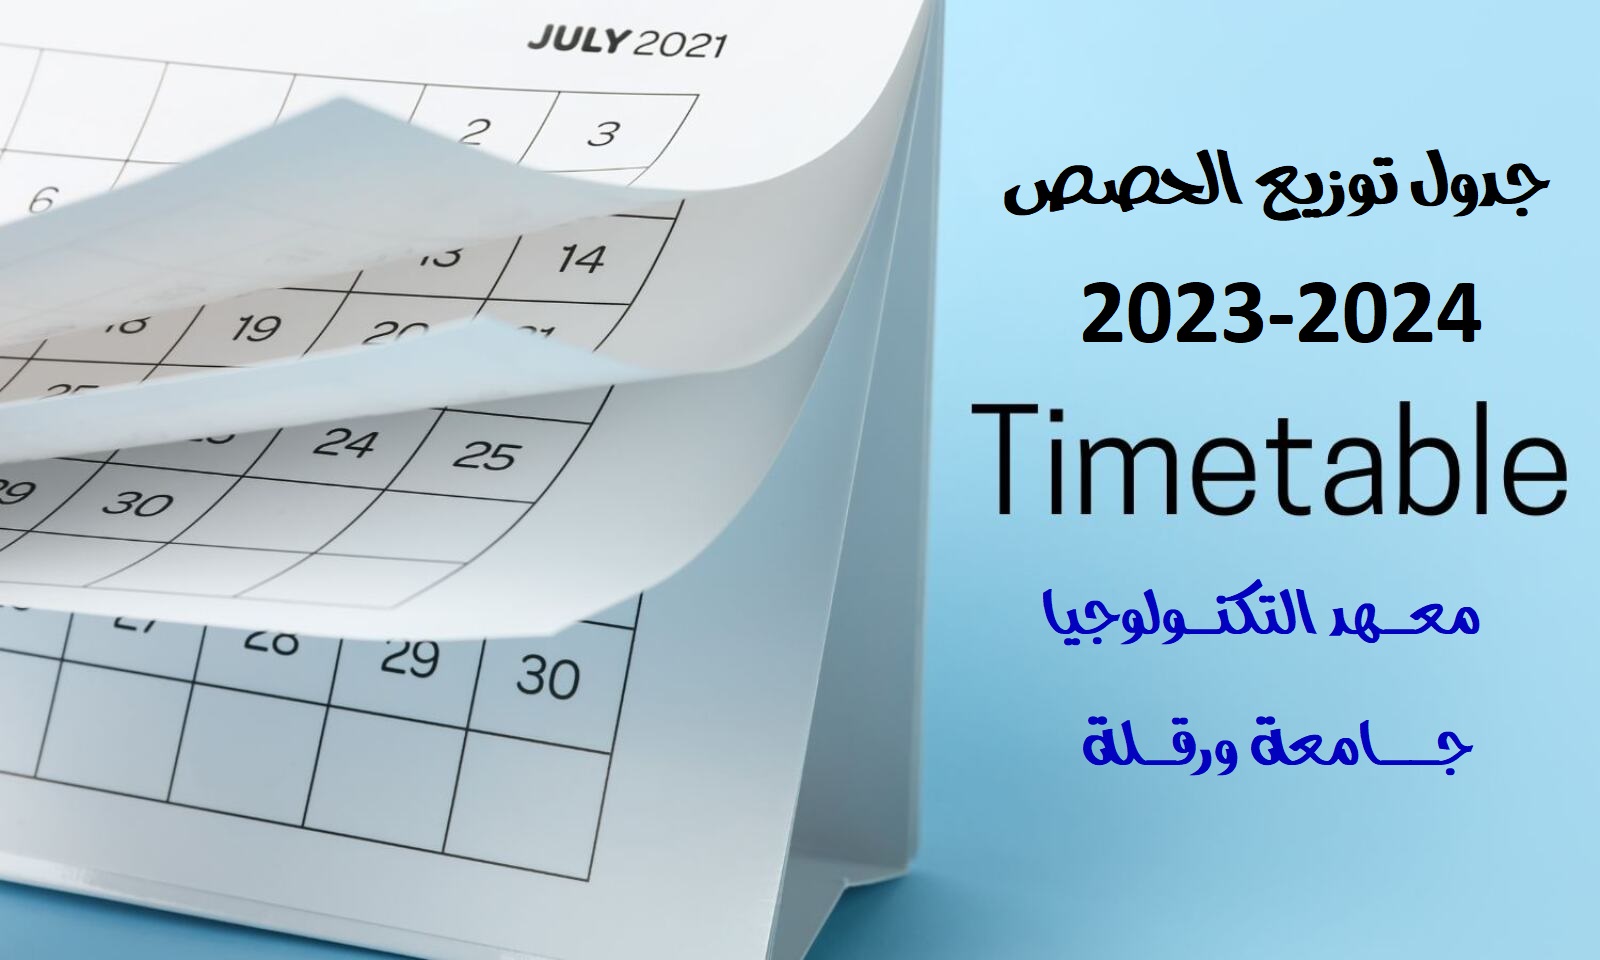 الجدول الزمني للحصص - الموسم الدراسي 2023-2024